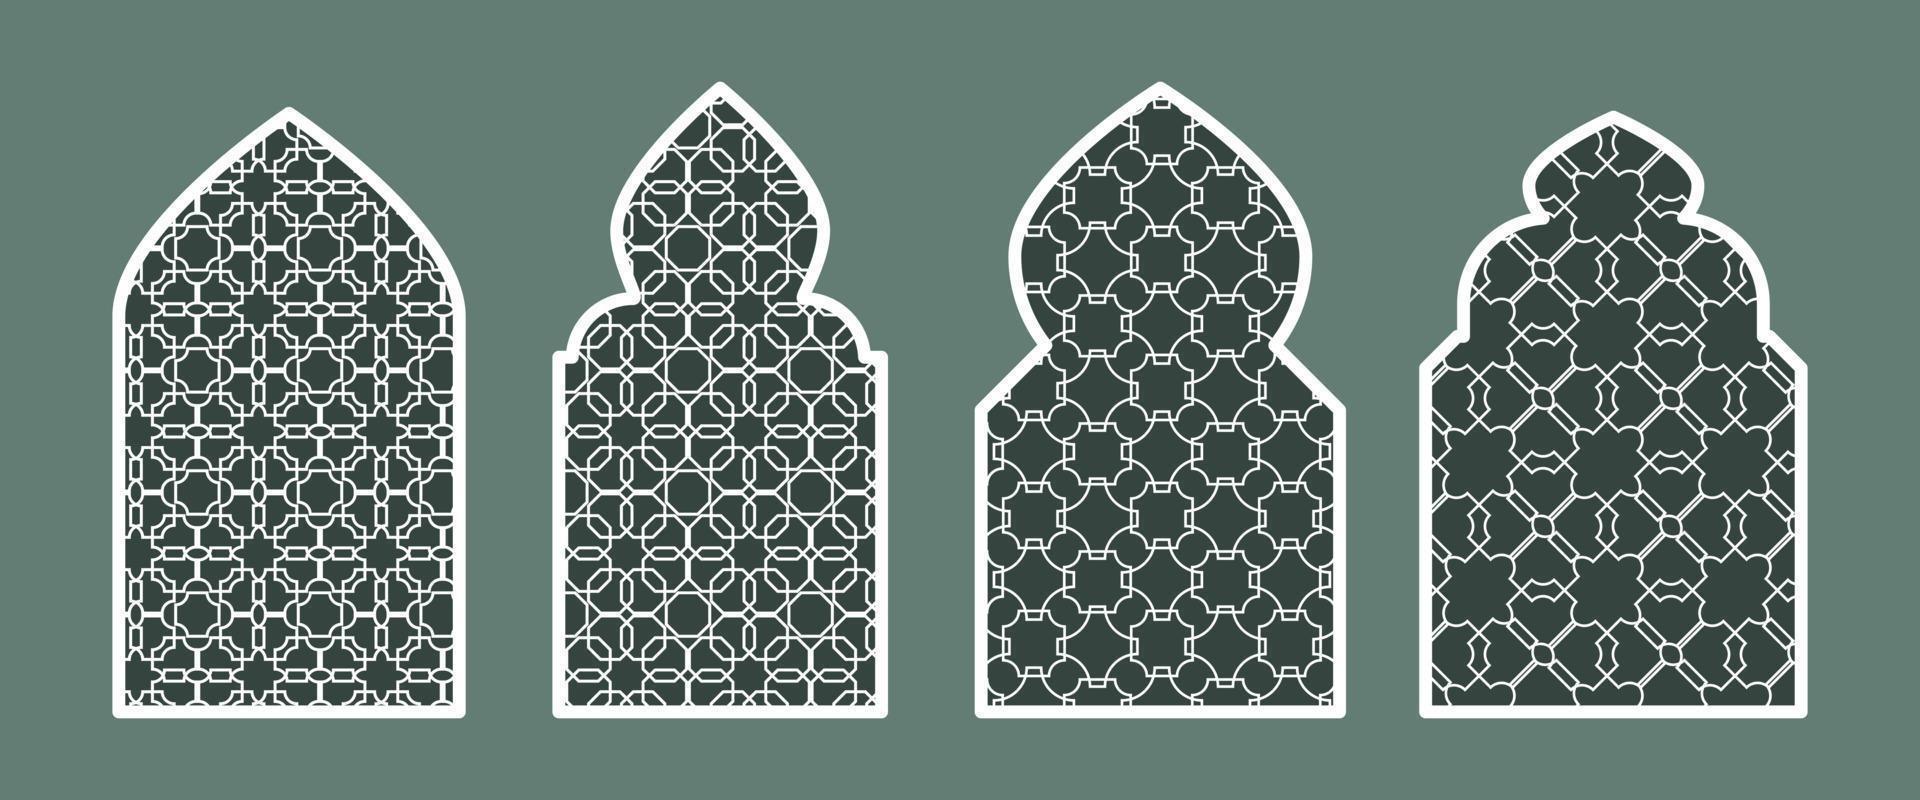 samling av islamic fönster och valv i de orientalisk ramadan stil med en modern design. textur på de fönster. islam, Indien, östra länder. en uppsättning av fönster och dörröppningar av annorlunda färger vektor